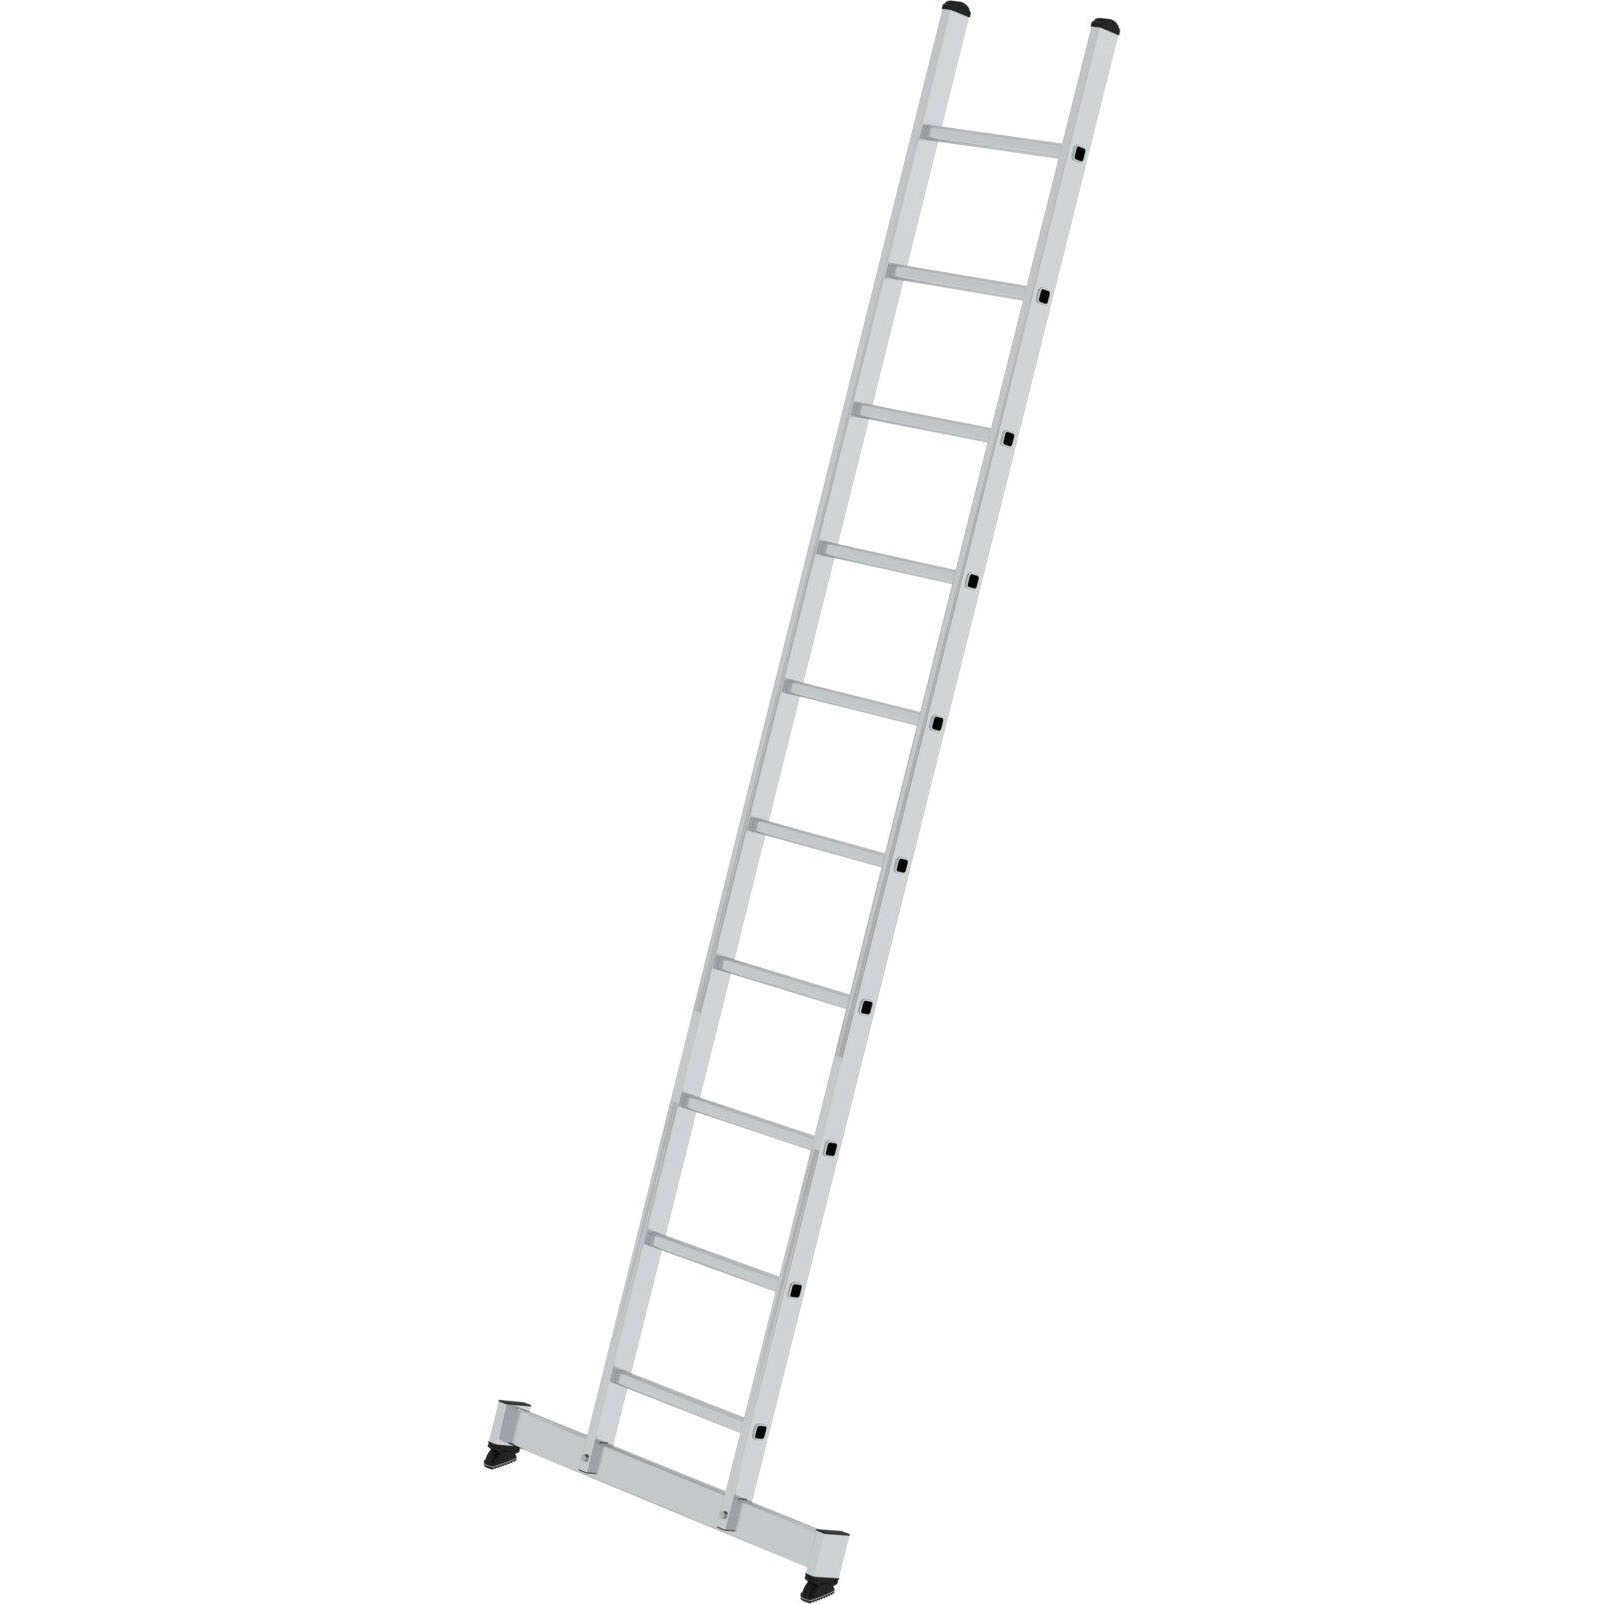 Приставная алюминиевая лестница 10 ступеней с траверсой «nivello»® Munk 010310